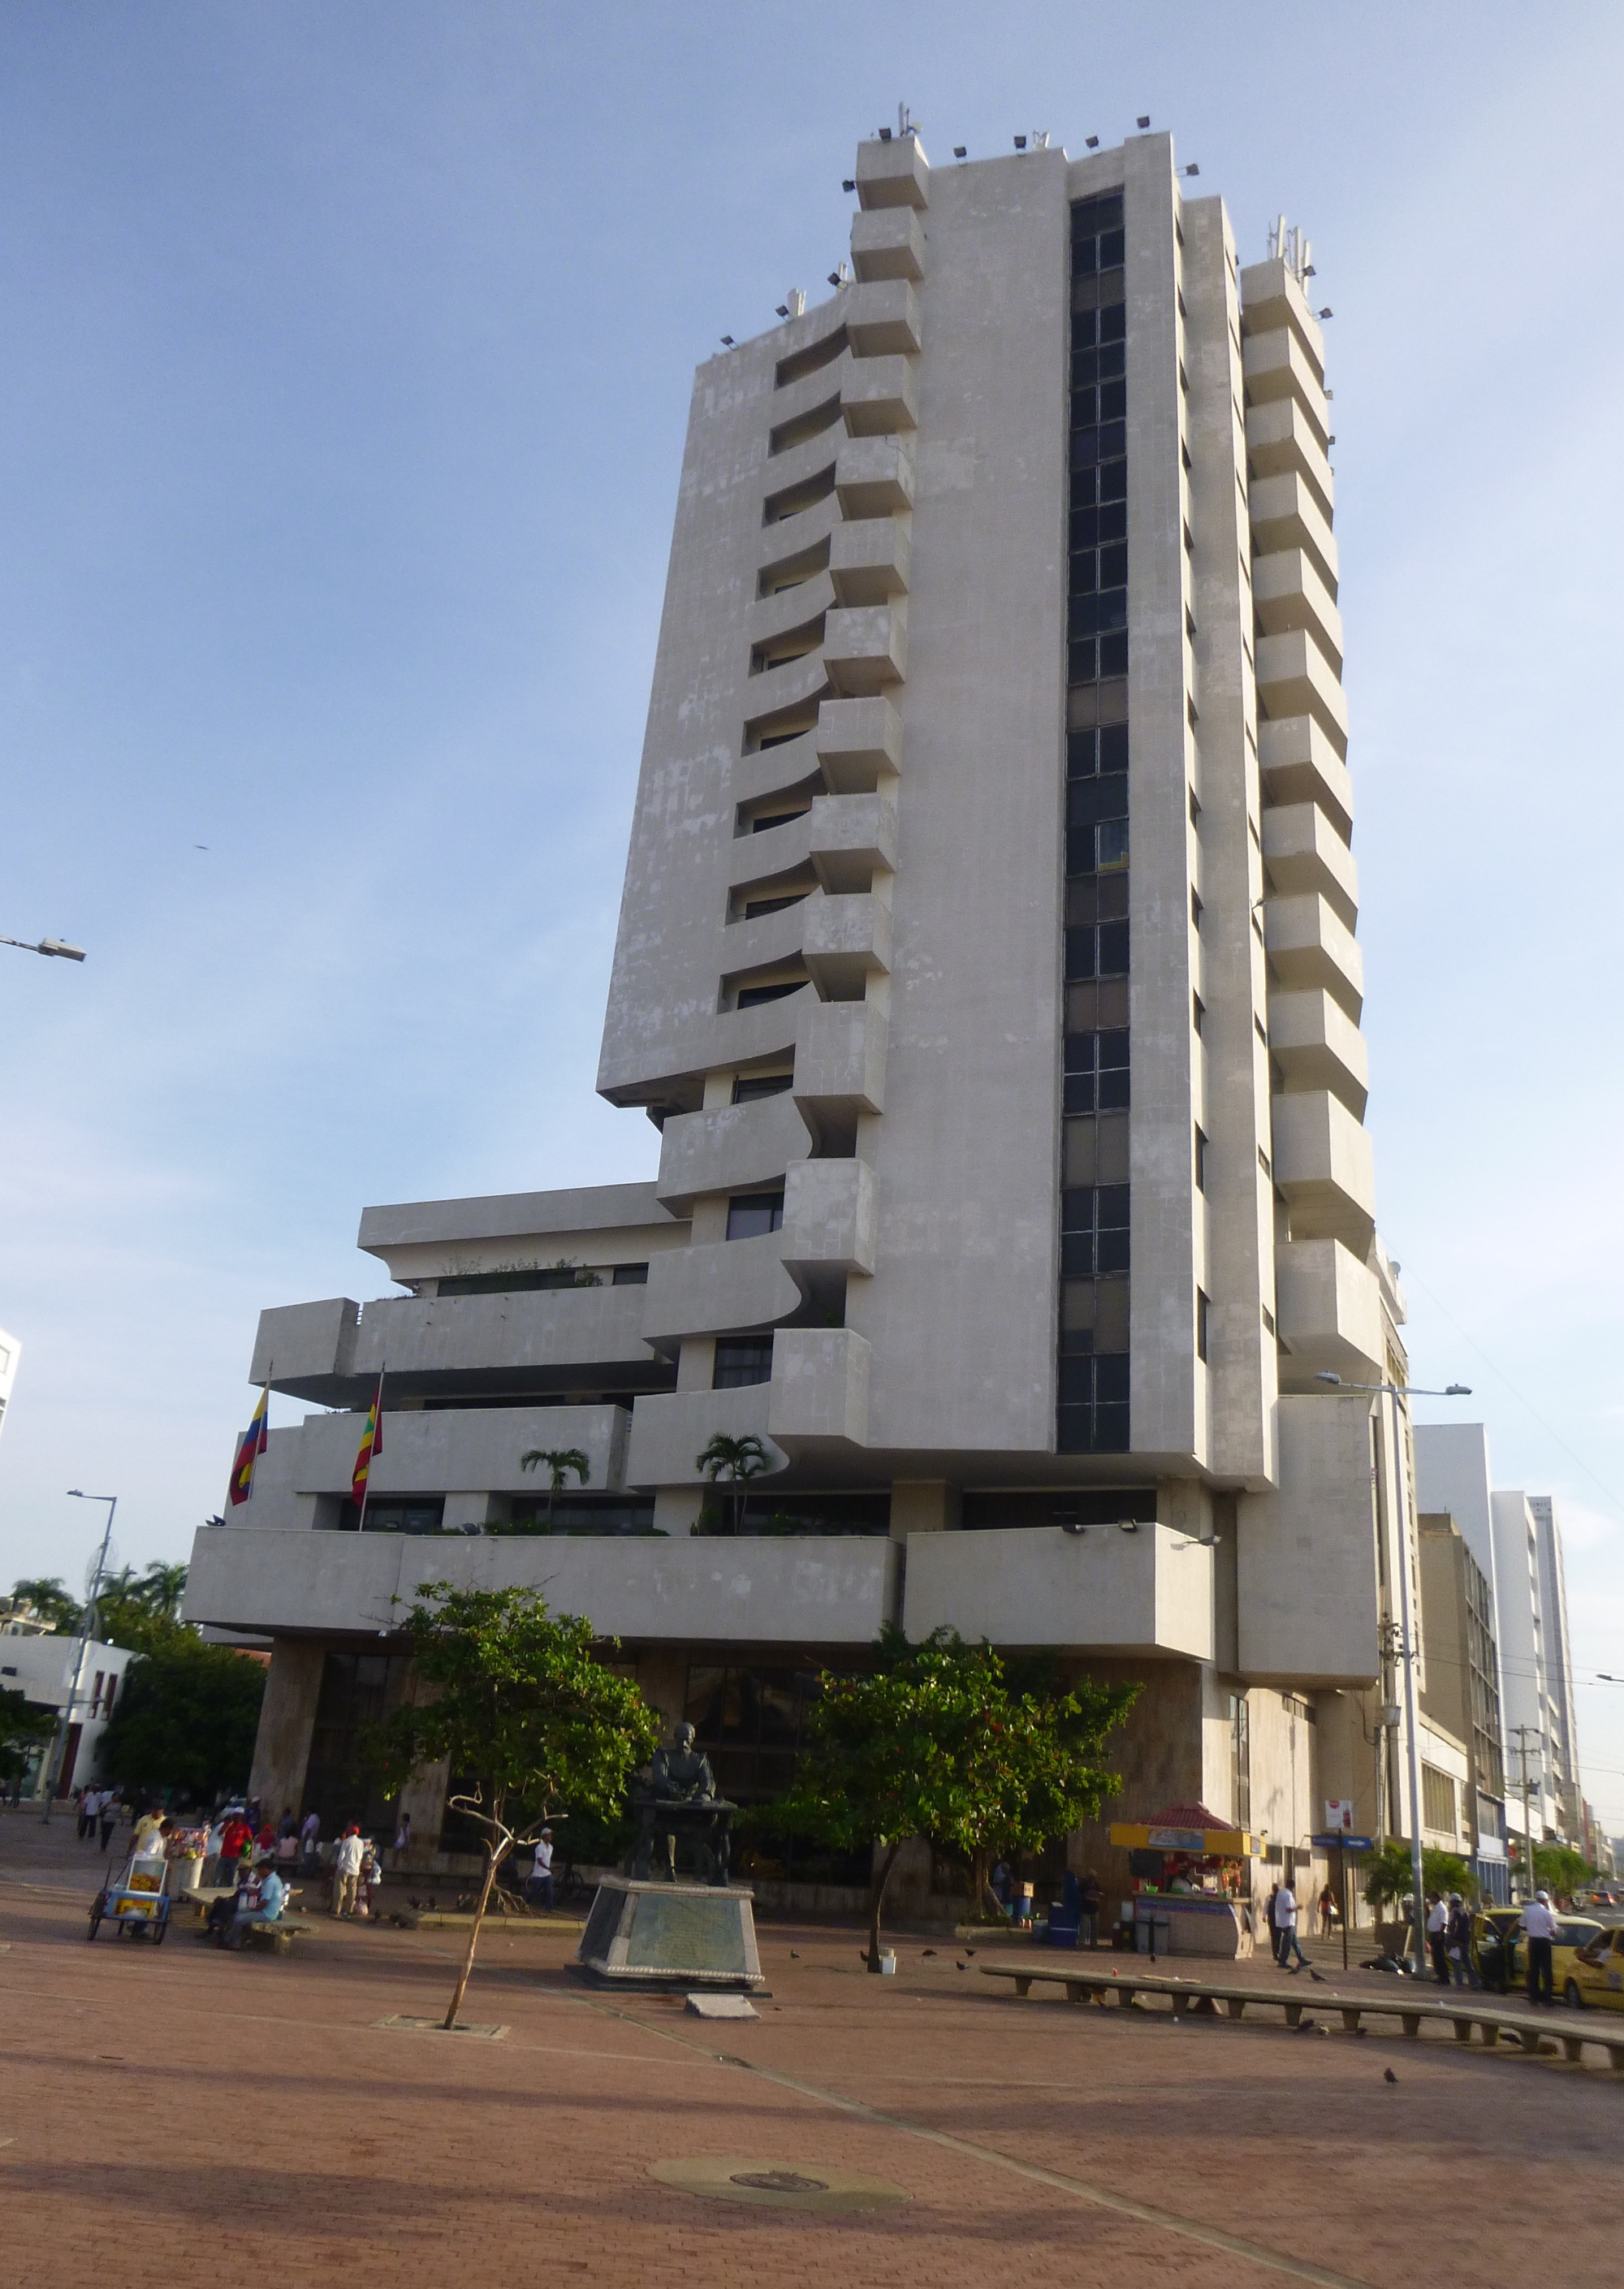 Banco Popular building